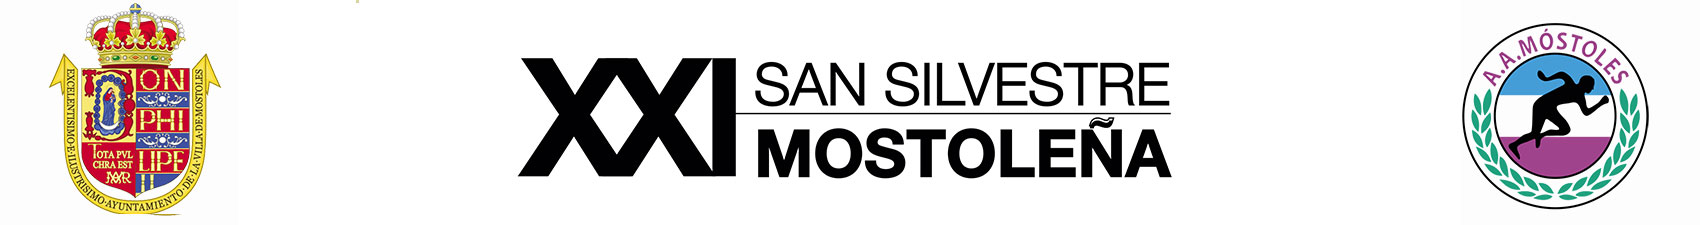 XXI San Silvestre Mostoleña - Mayores